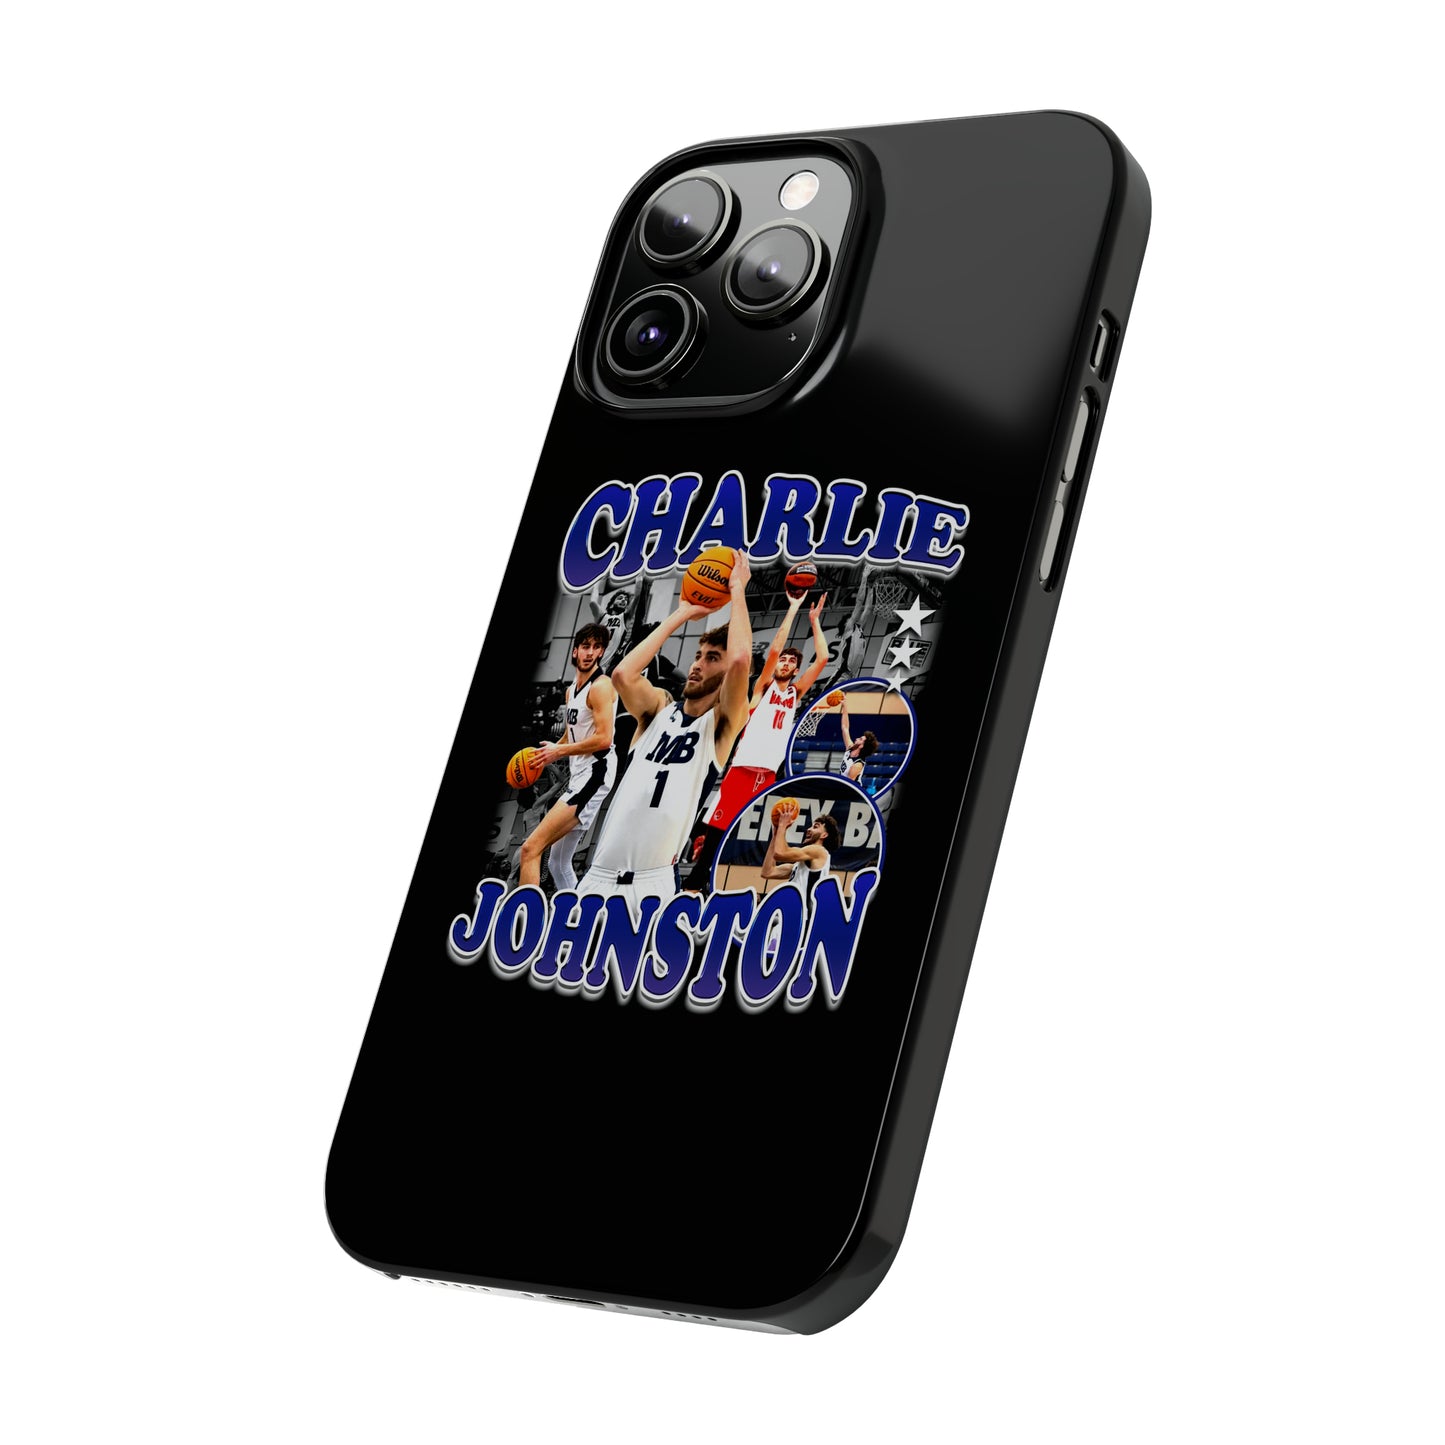 Charlie Johnston Slim Phone Cases